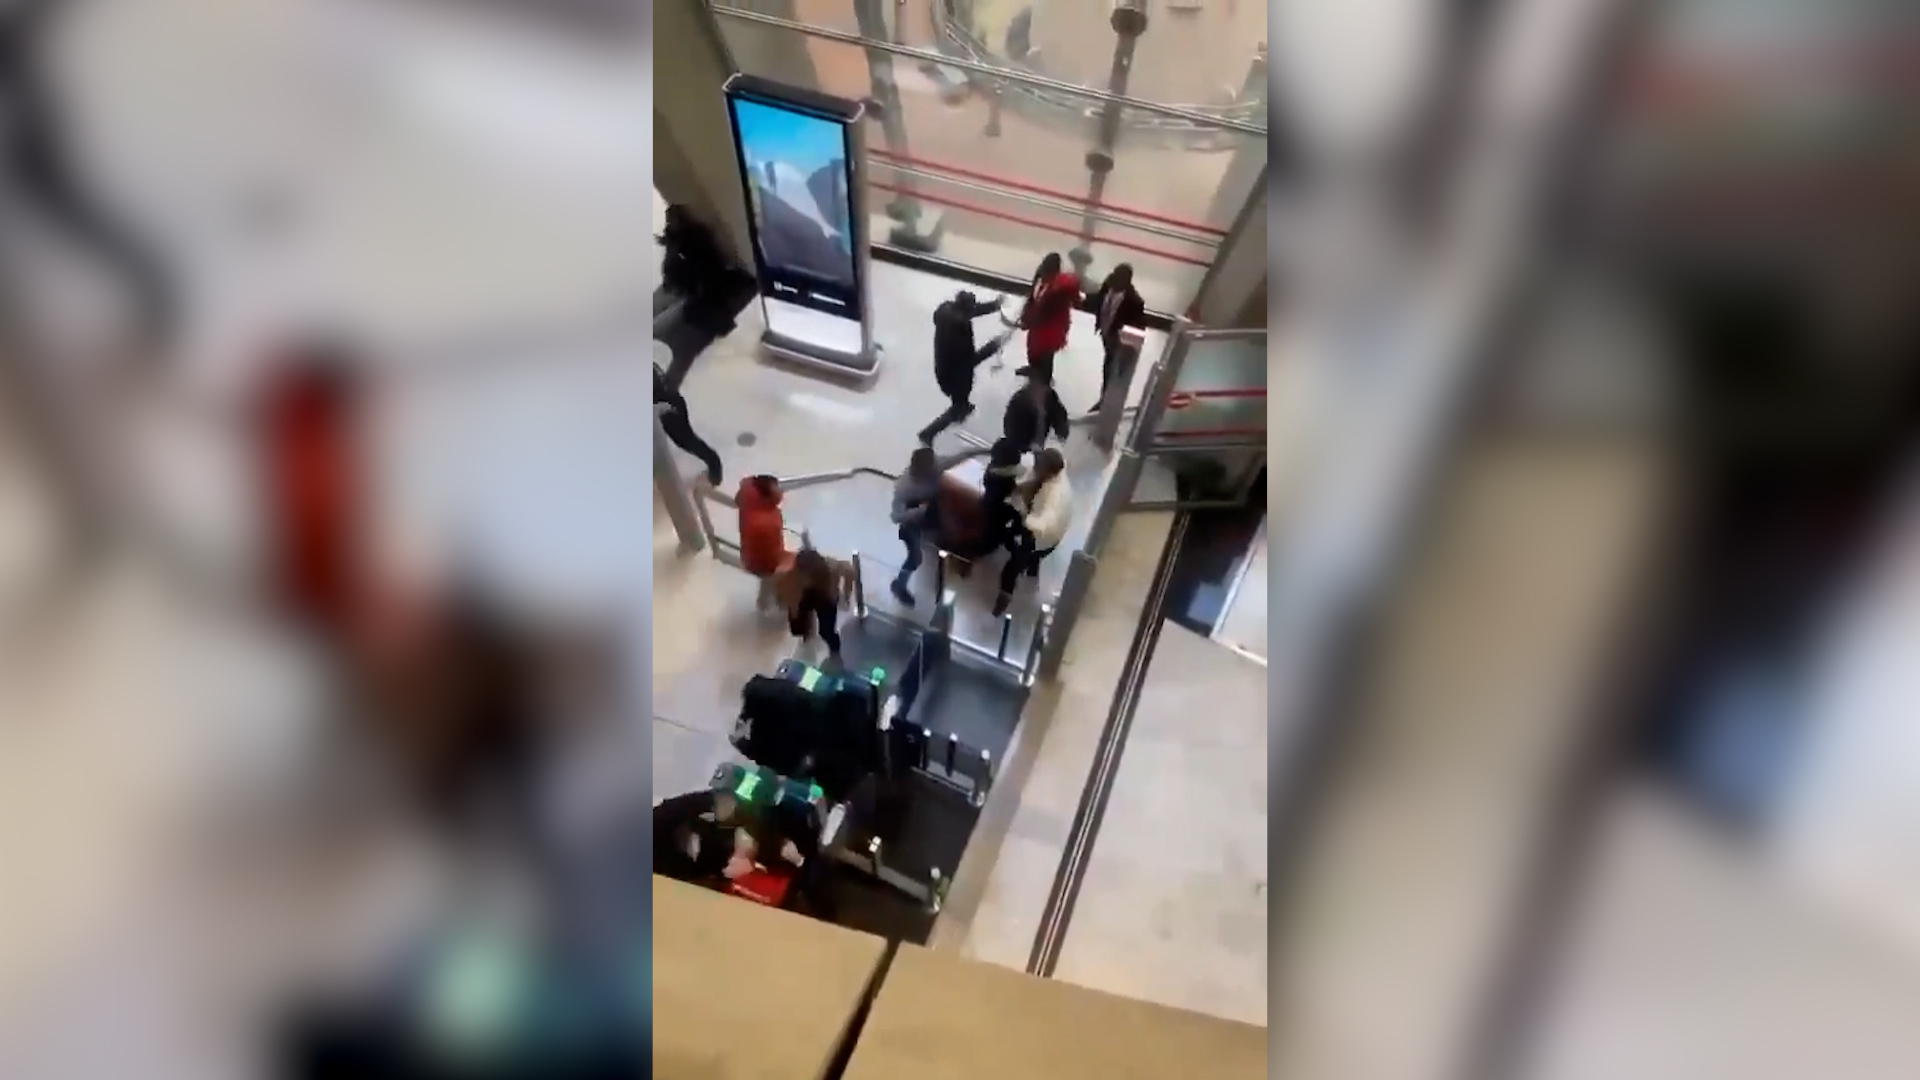 De violents incidents ont éclaté ce mercredi 27 mars dans l'aéroport de Roissy entre des manifestants kurdes et le personnel de sécurité. DR